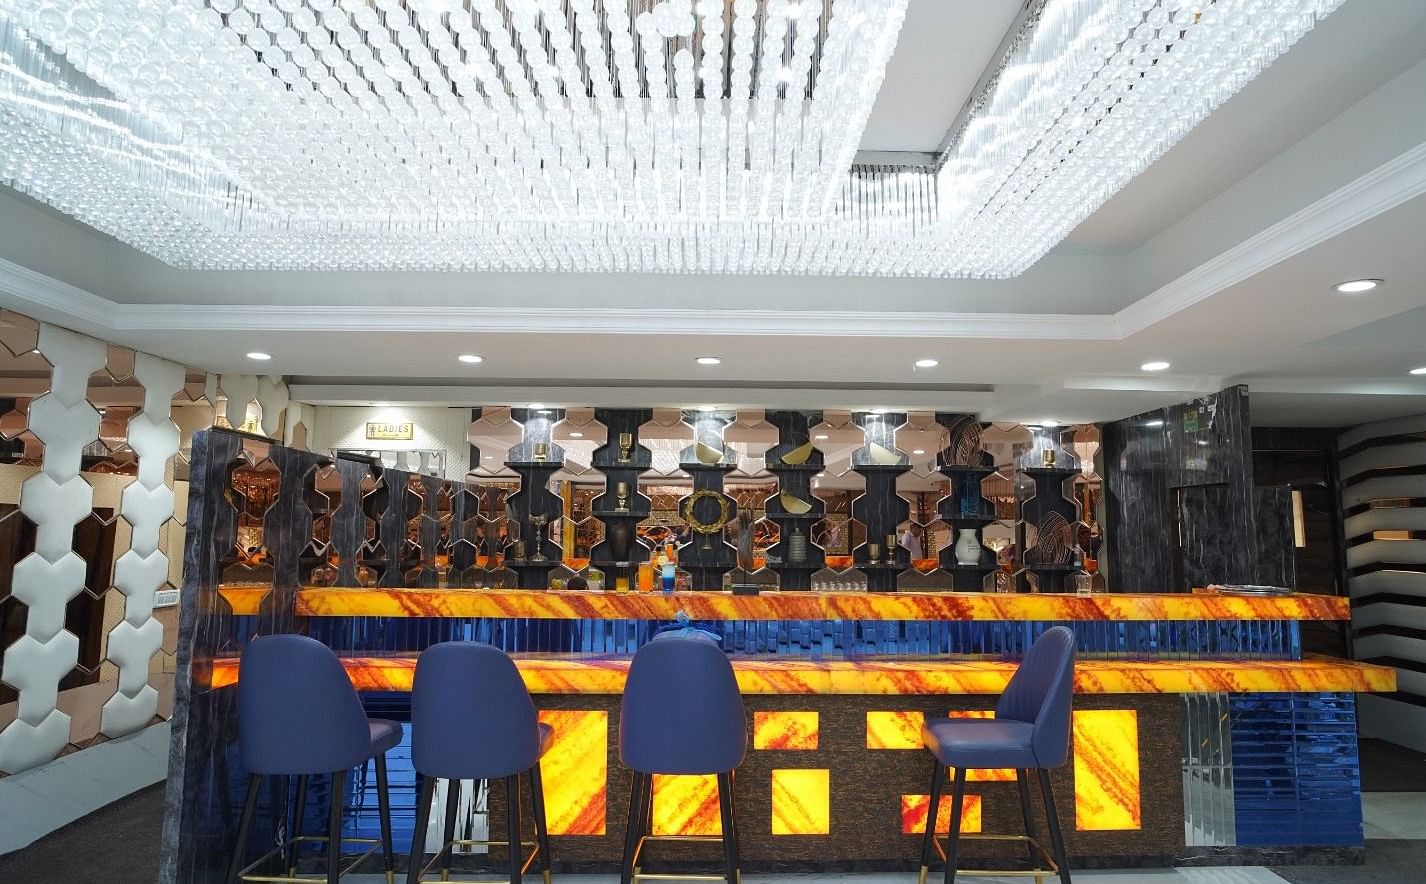 Banana Tree Hotel Banquets in Sahibabad, Ghaziabad